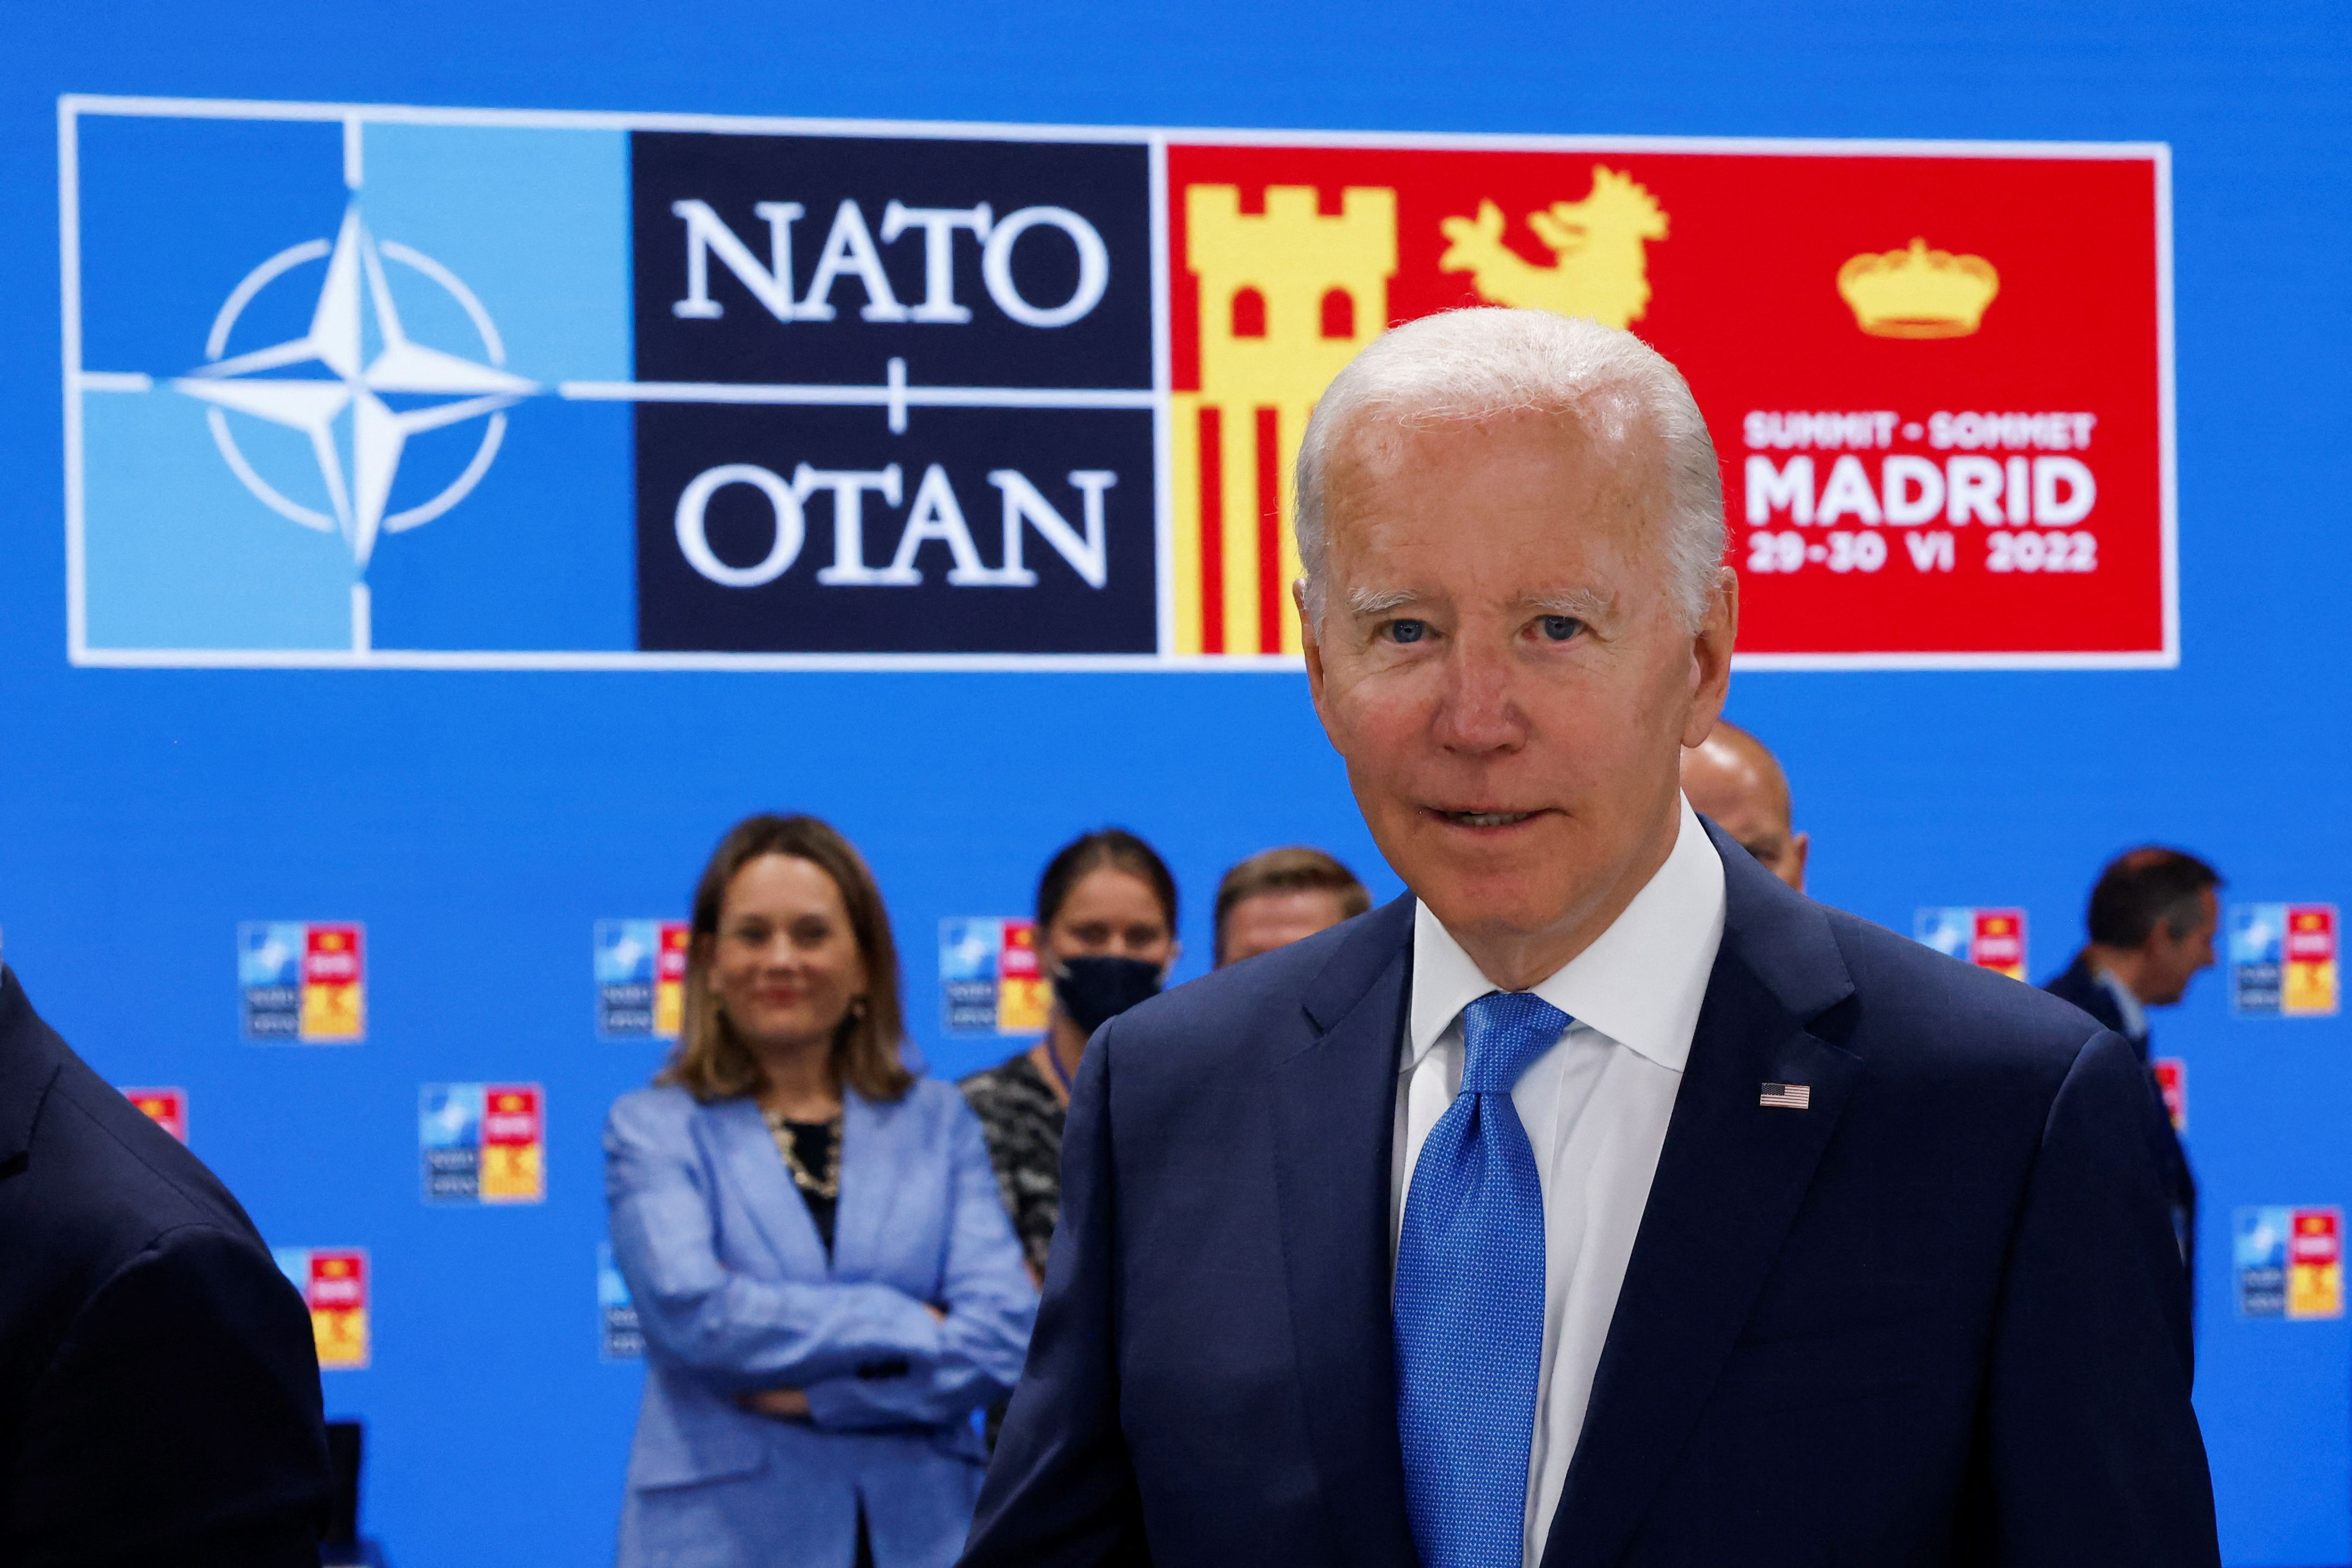 Joe Biden anunció un fuerte impulso en la presencia militar de Estados Unidos en Europa, incluida una base estadounidense permanente en Polonia, dos destructores más de la Marina con base en Rota, España, y dos escuadrones F35 más en el Reino Unido. REUTERS/Yves Herman